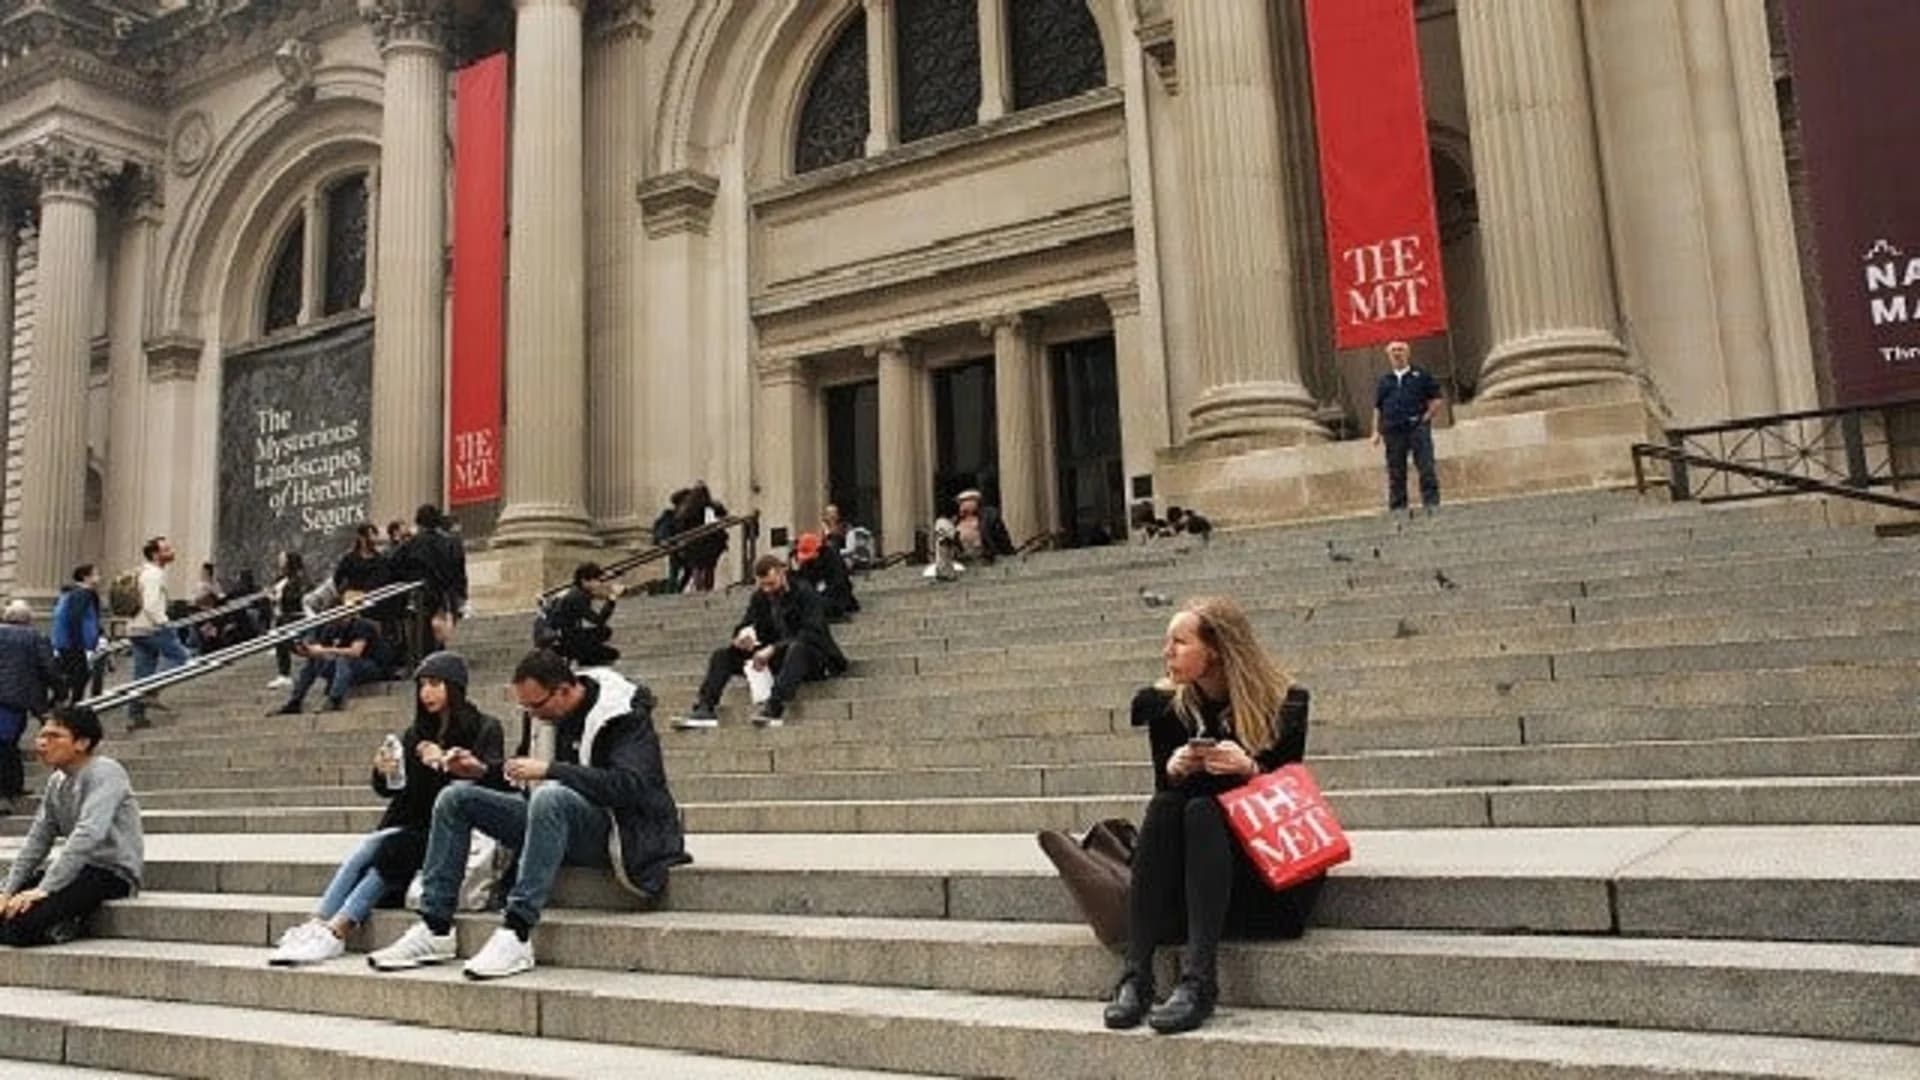 New York's Met Museum will start charging mandatory $25 fee